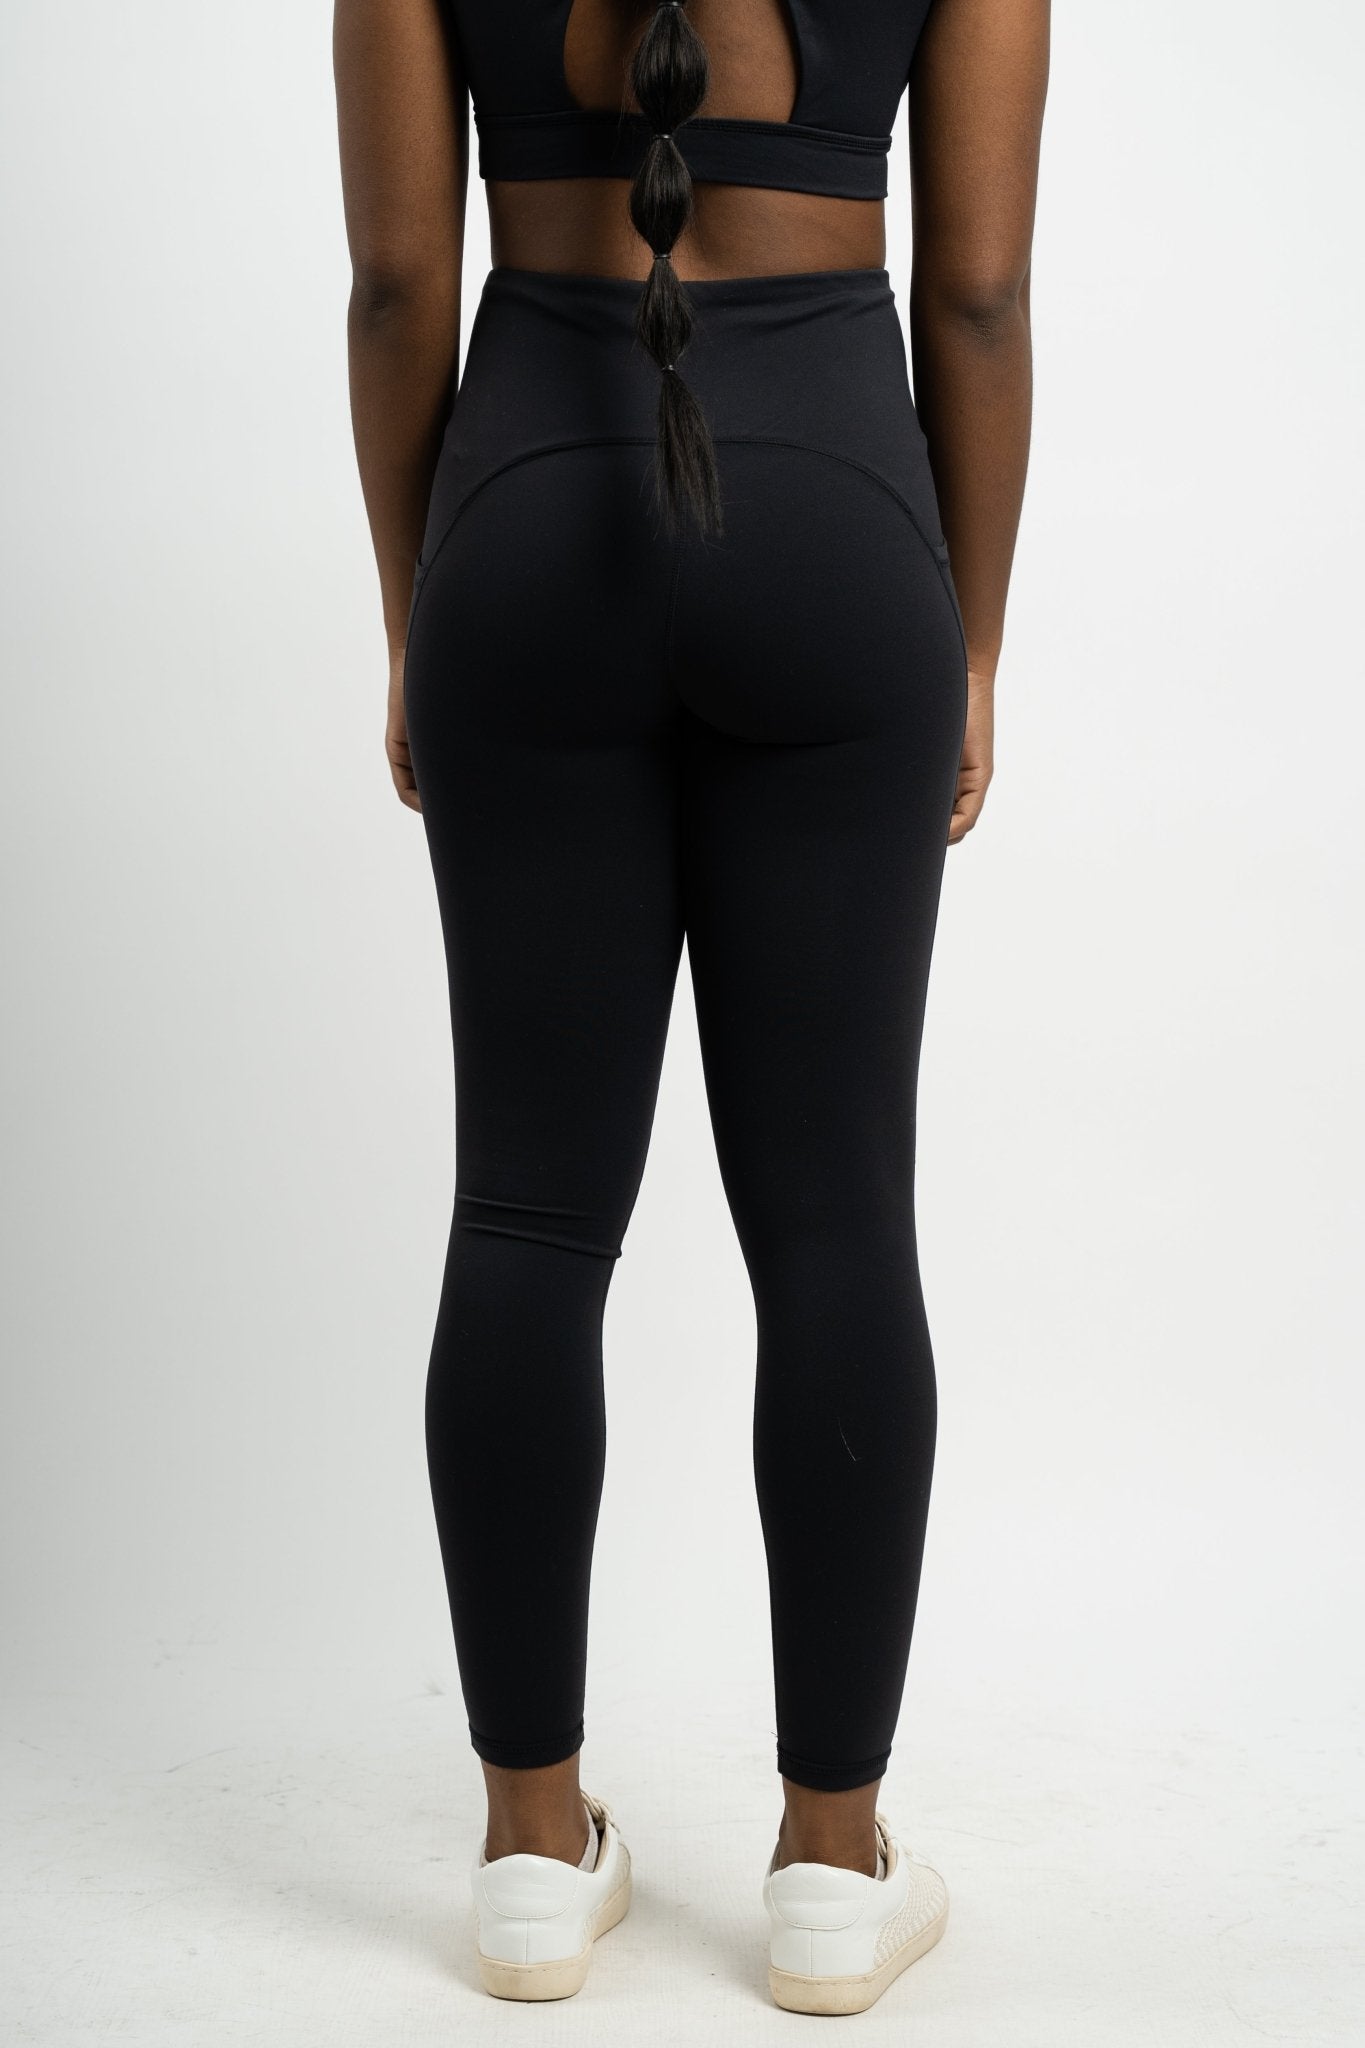 Lycra blend activewear leggings black | Lush Fashion Lounge: women's boutique leggings, boutique fashion leggings, boutique exercise leggings, cute affordable leggings